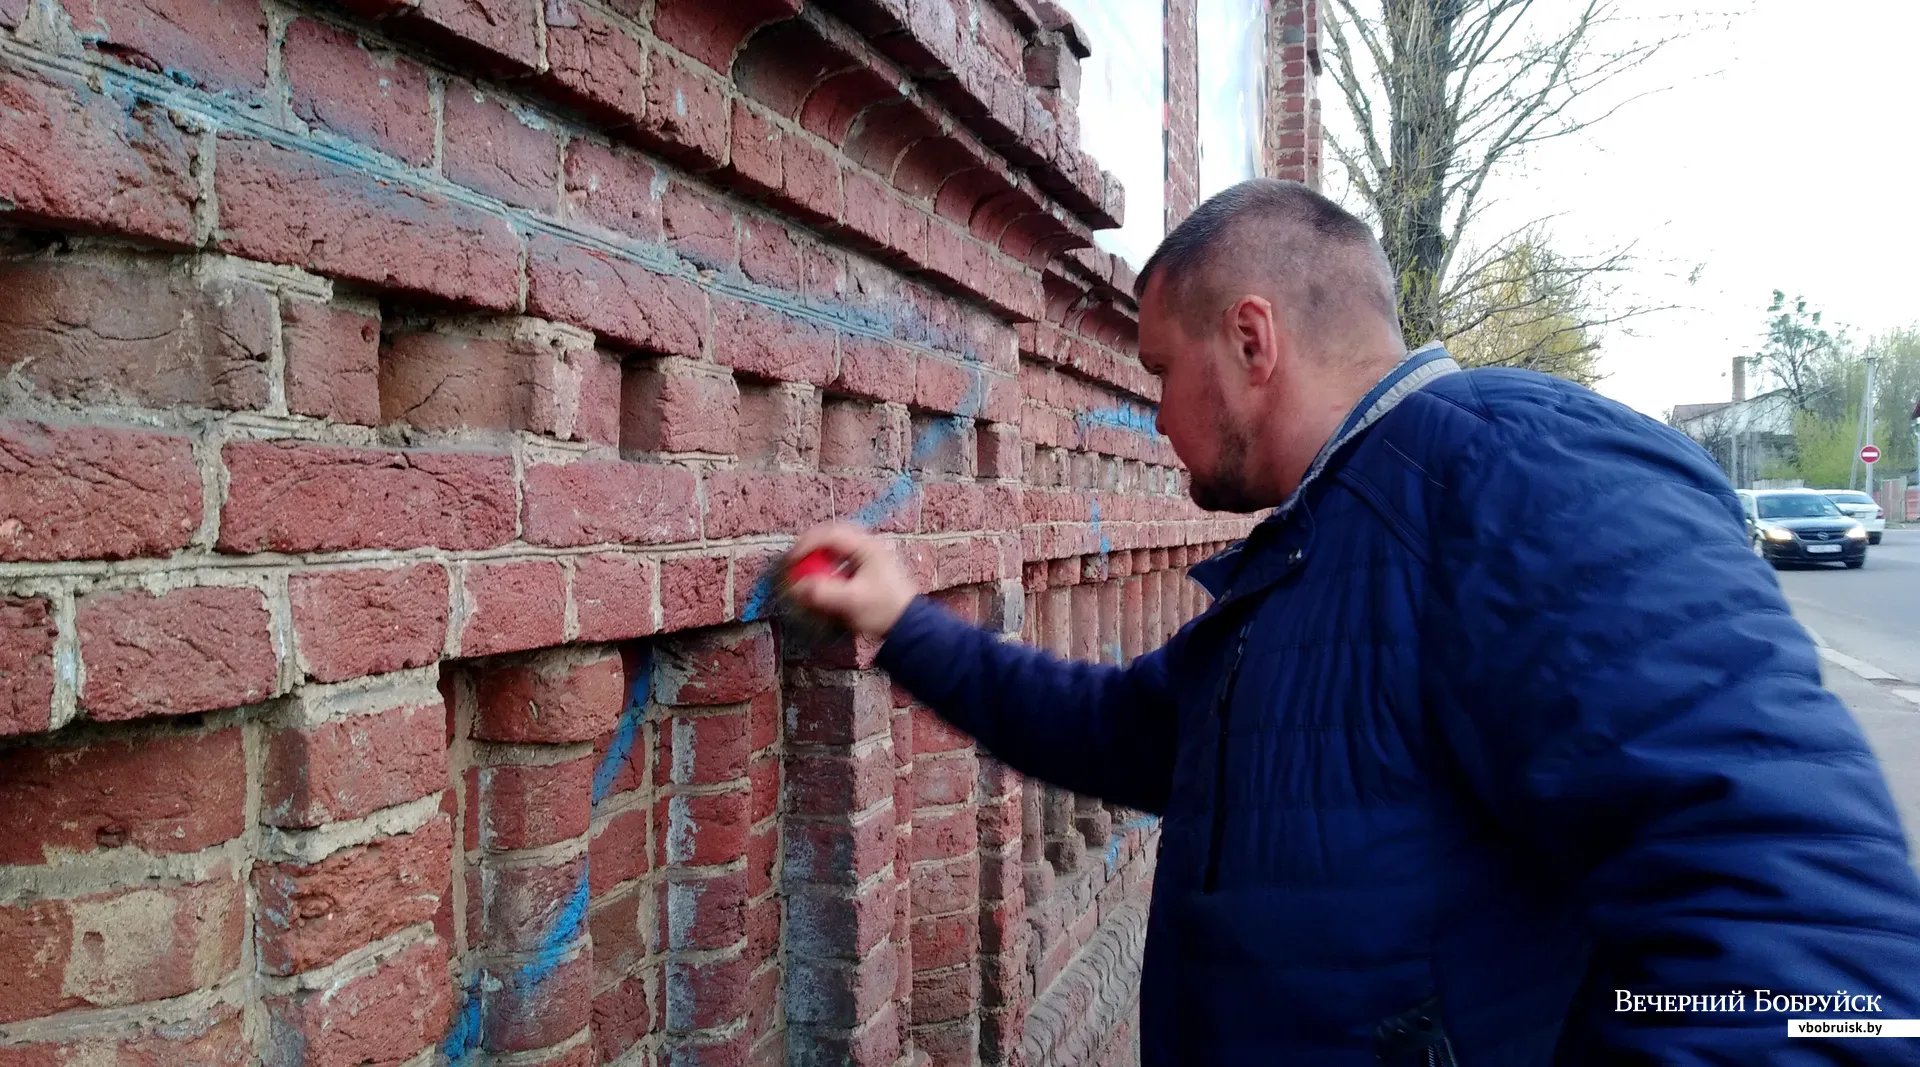 Неизвестные разрисовали буквами "Z" руины старинной синагоги в Бобруйске